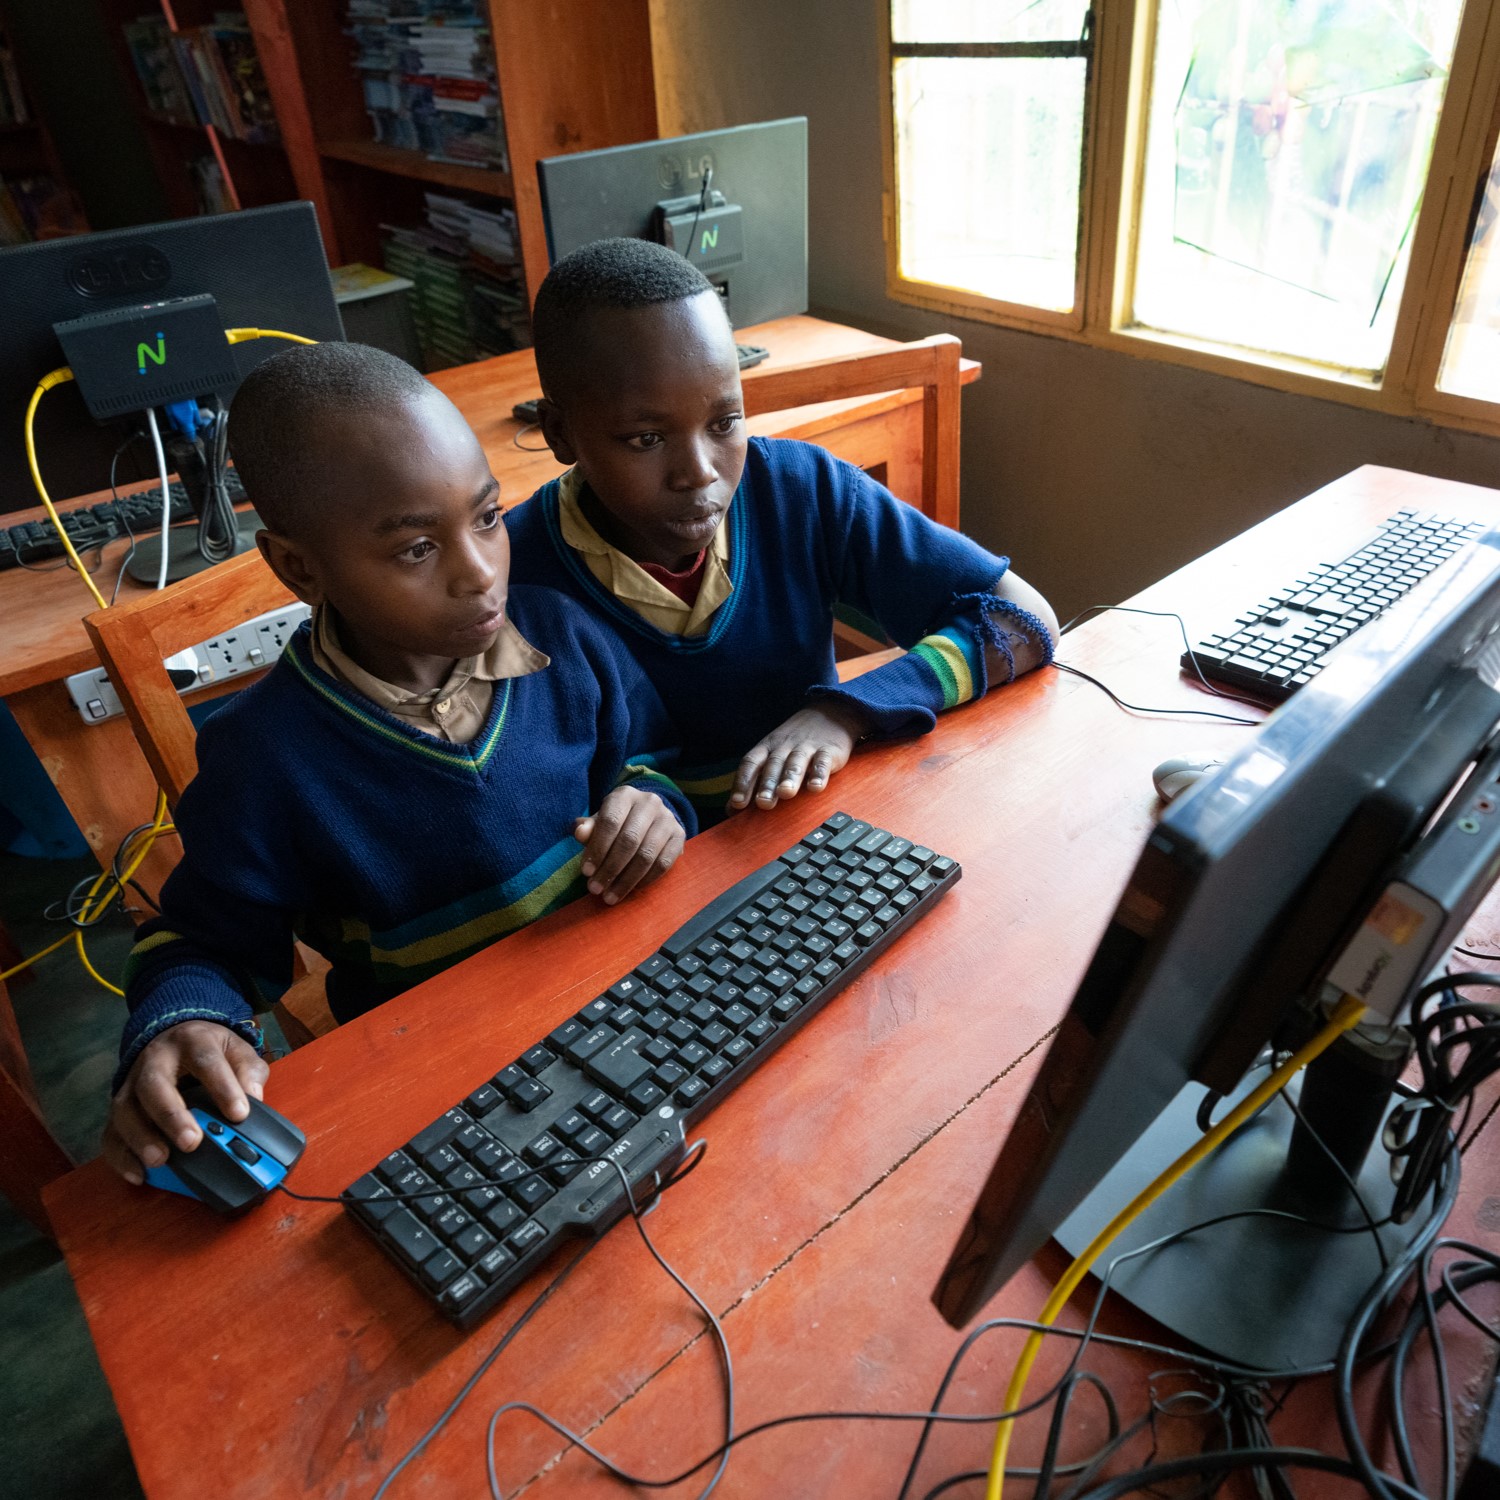 children on computer